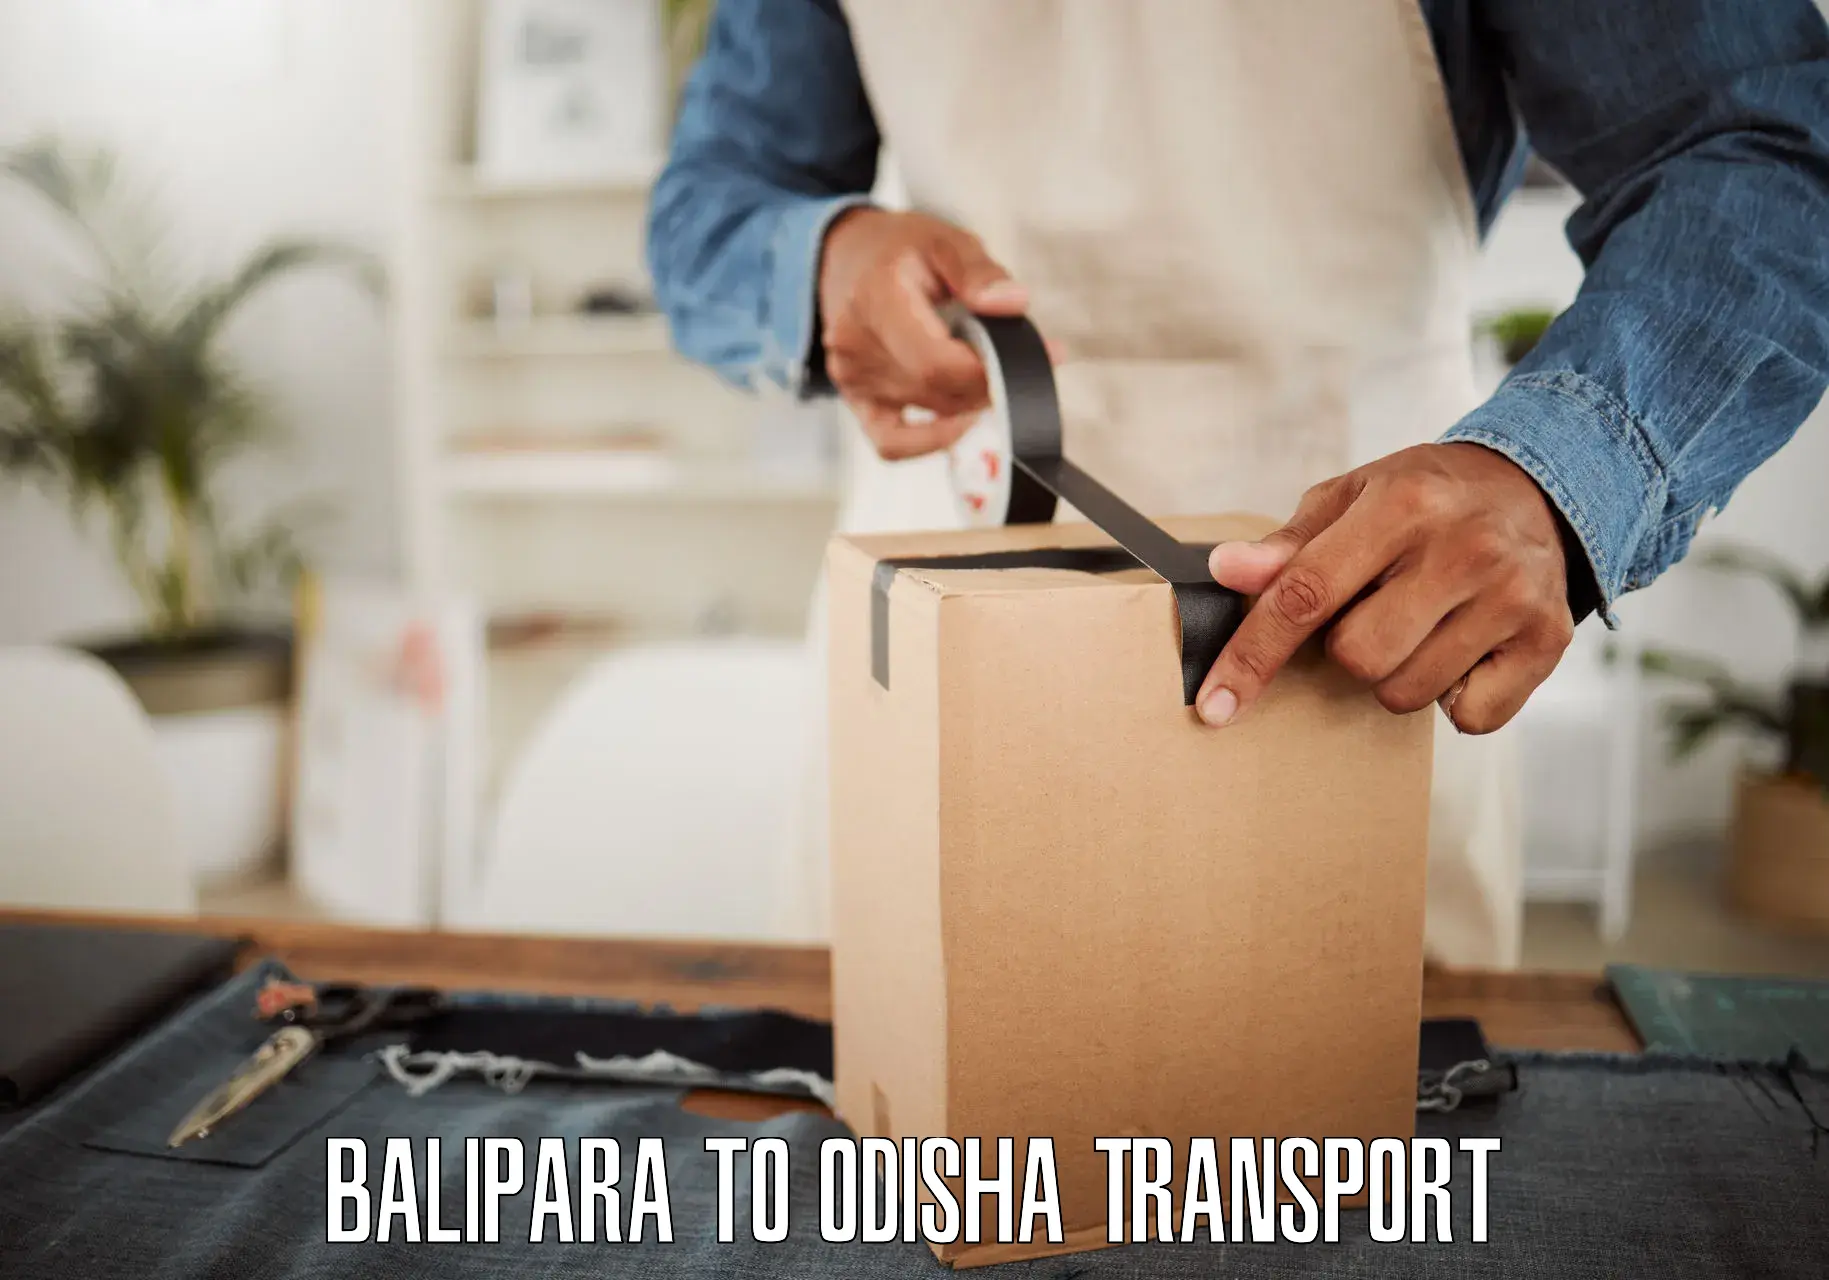 Furniture transport service Balipara to Badagada